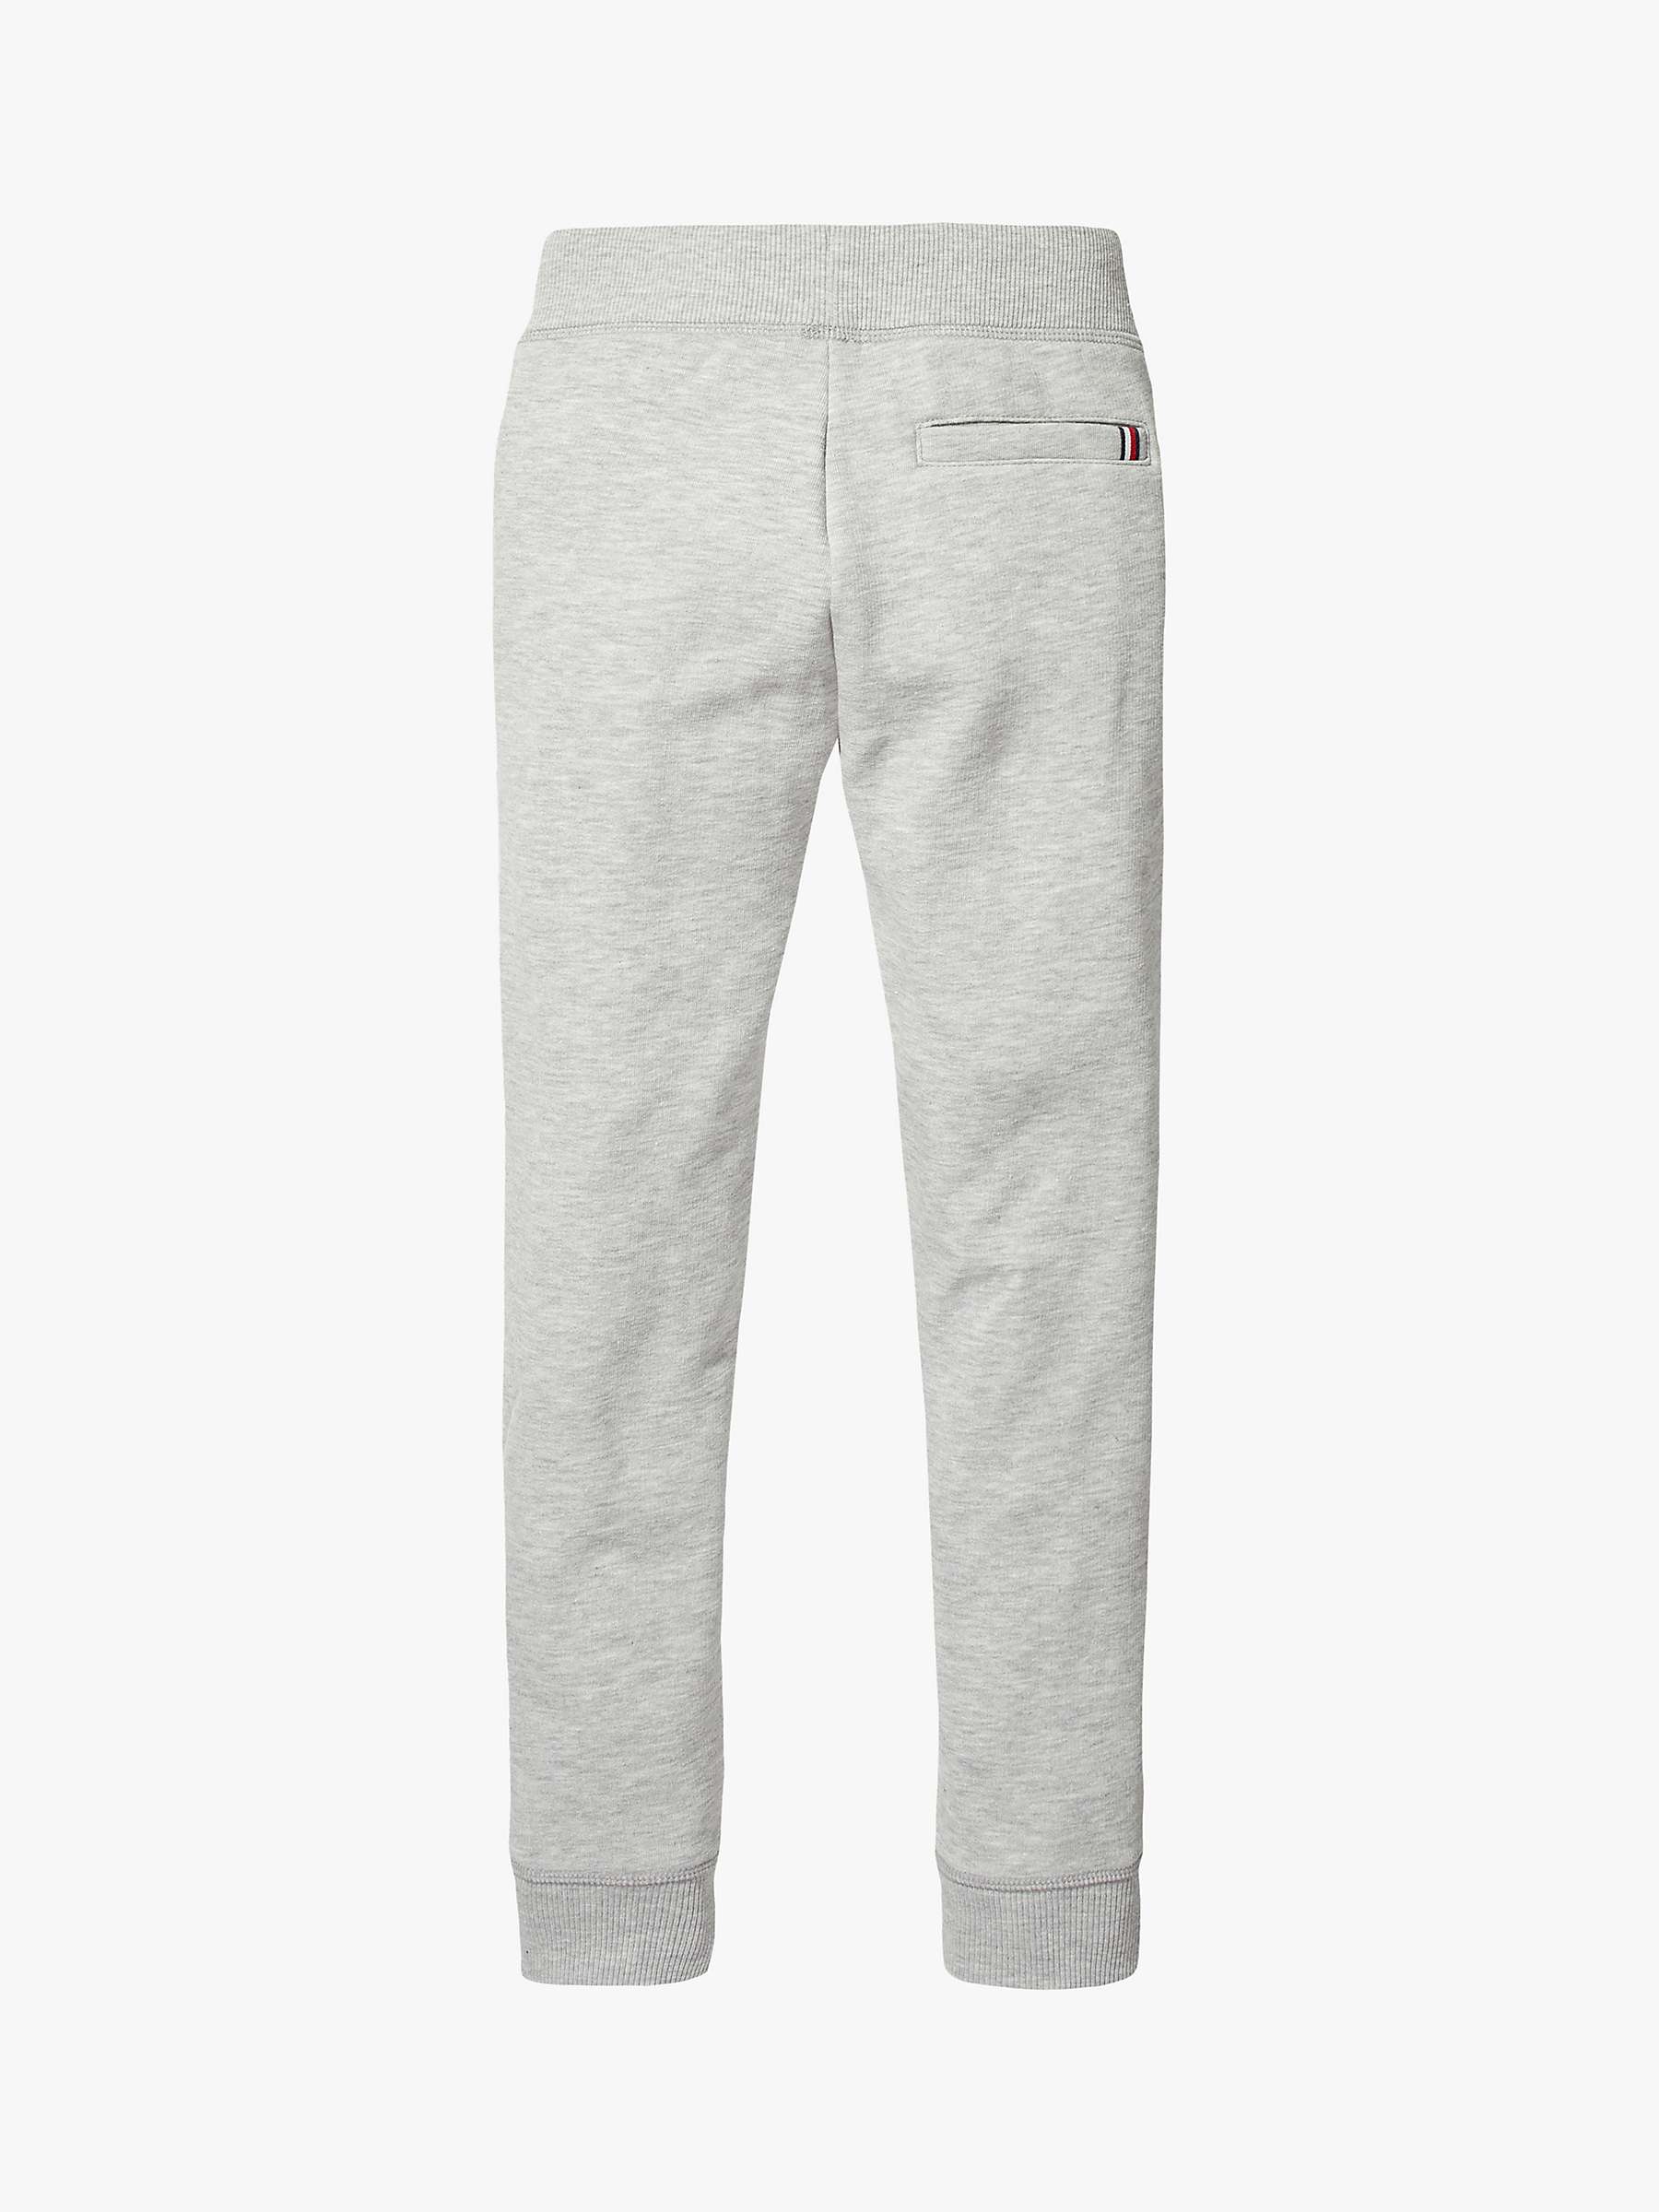 Buy Tommy Hilfiger Kids' Basic Sweatpants, Grey Online at johnlewis.com